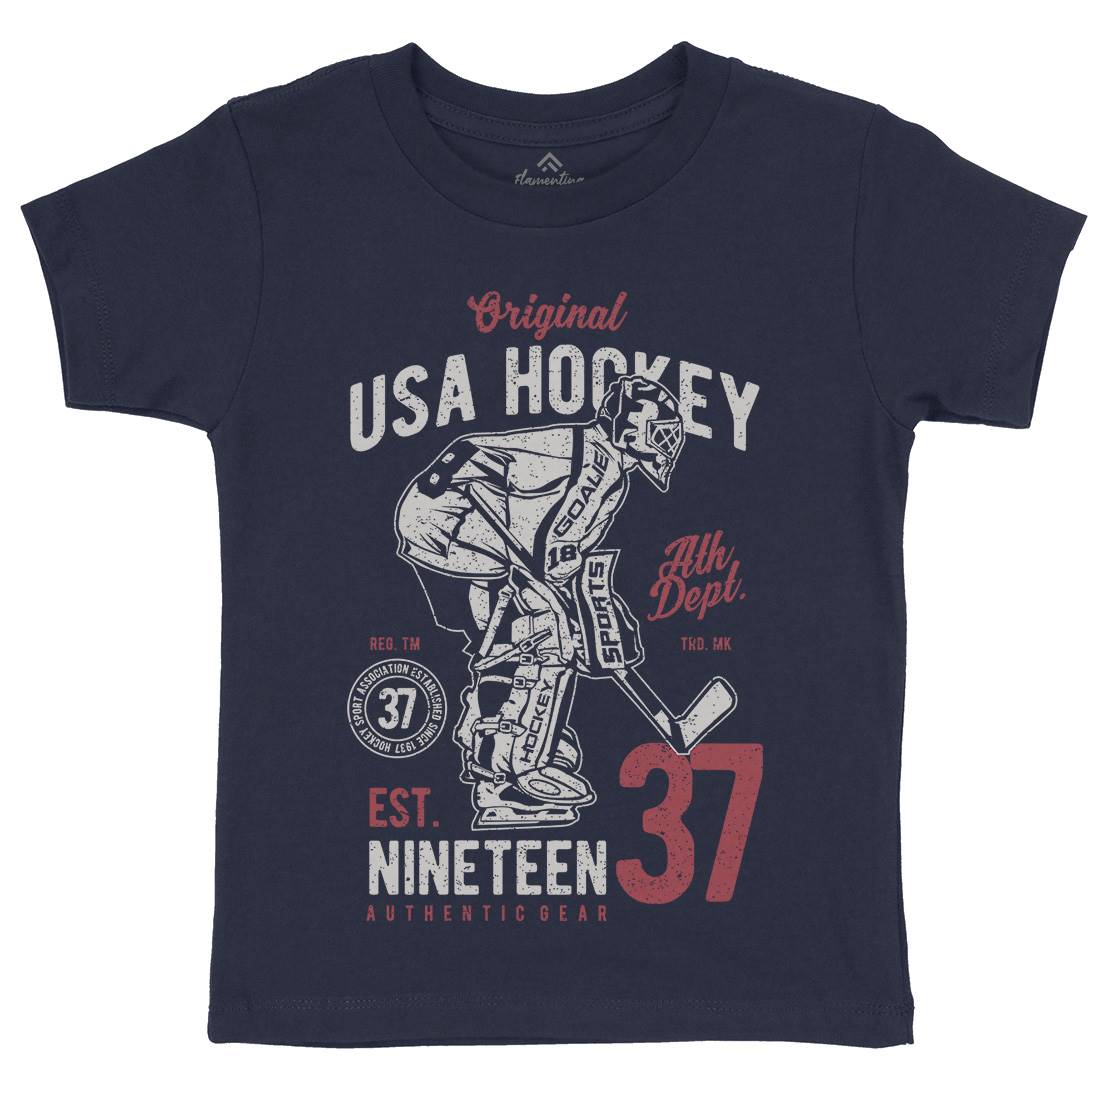 Hockey Tournament Kids Crew Neck T-Shirt Sport A782